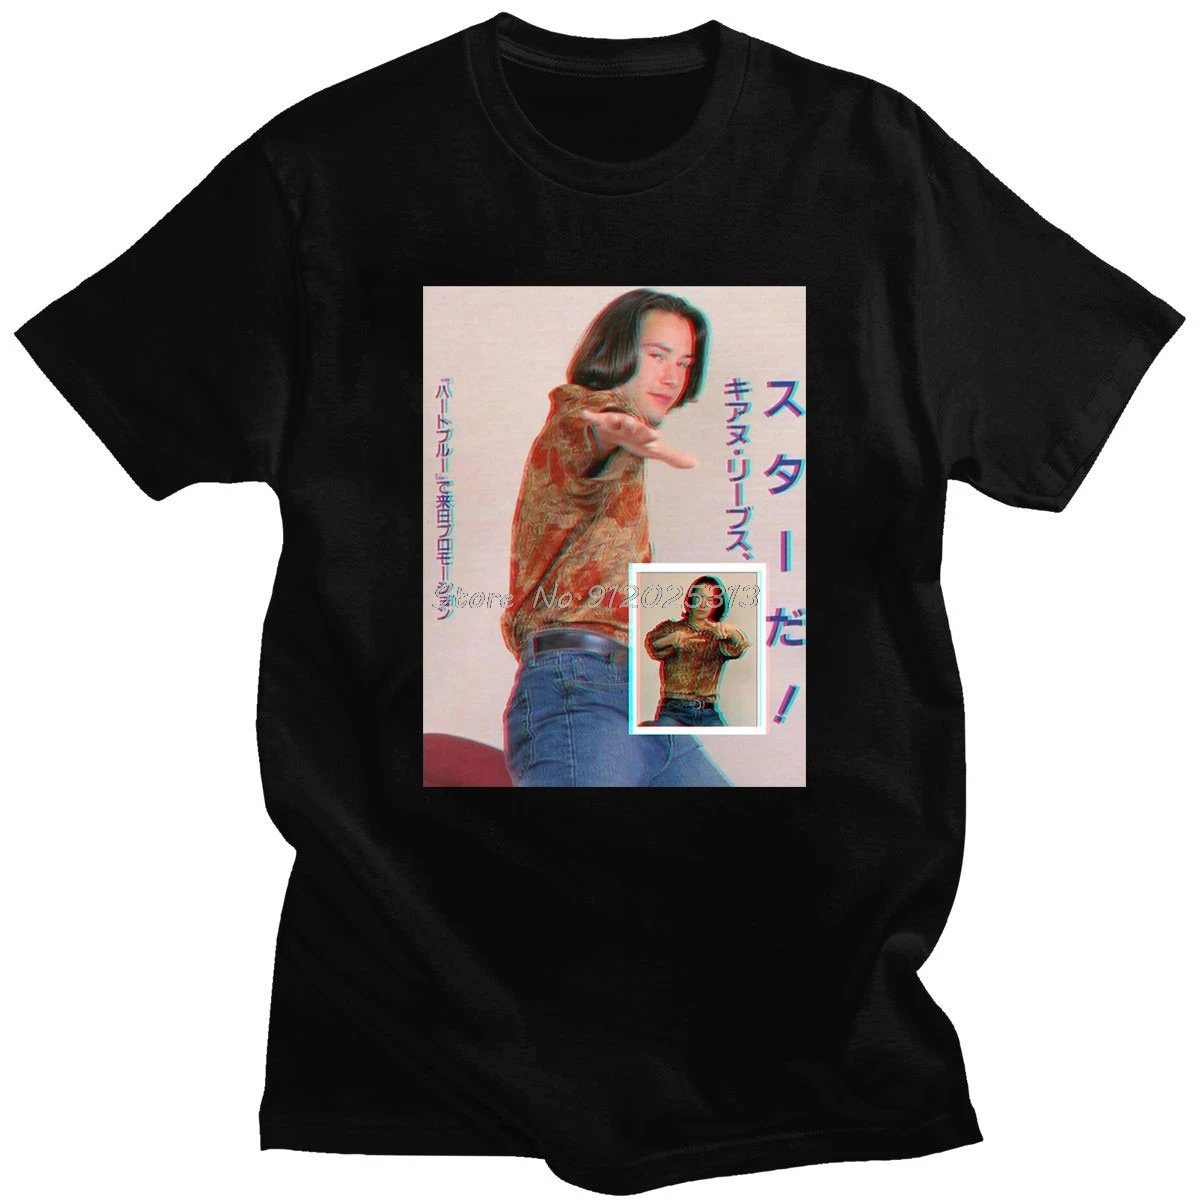 Camiseta transpirable Keanu Reeves Point Break, camiseta suave ajustada para fotografía de Surf, camiseta estampada para jóvenes, nuevo estilo de verano